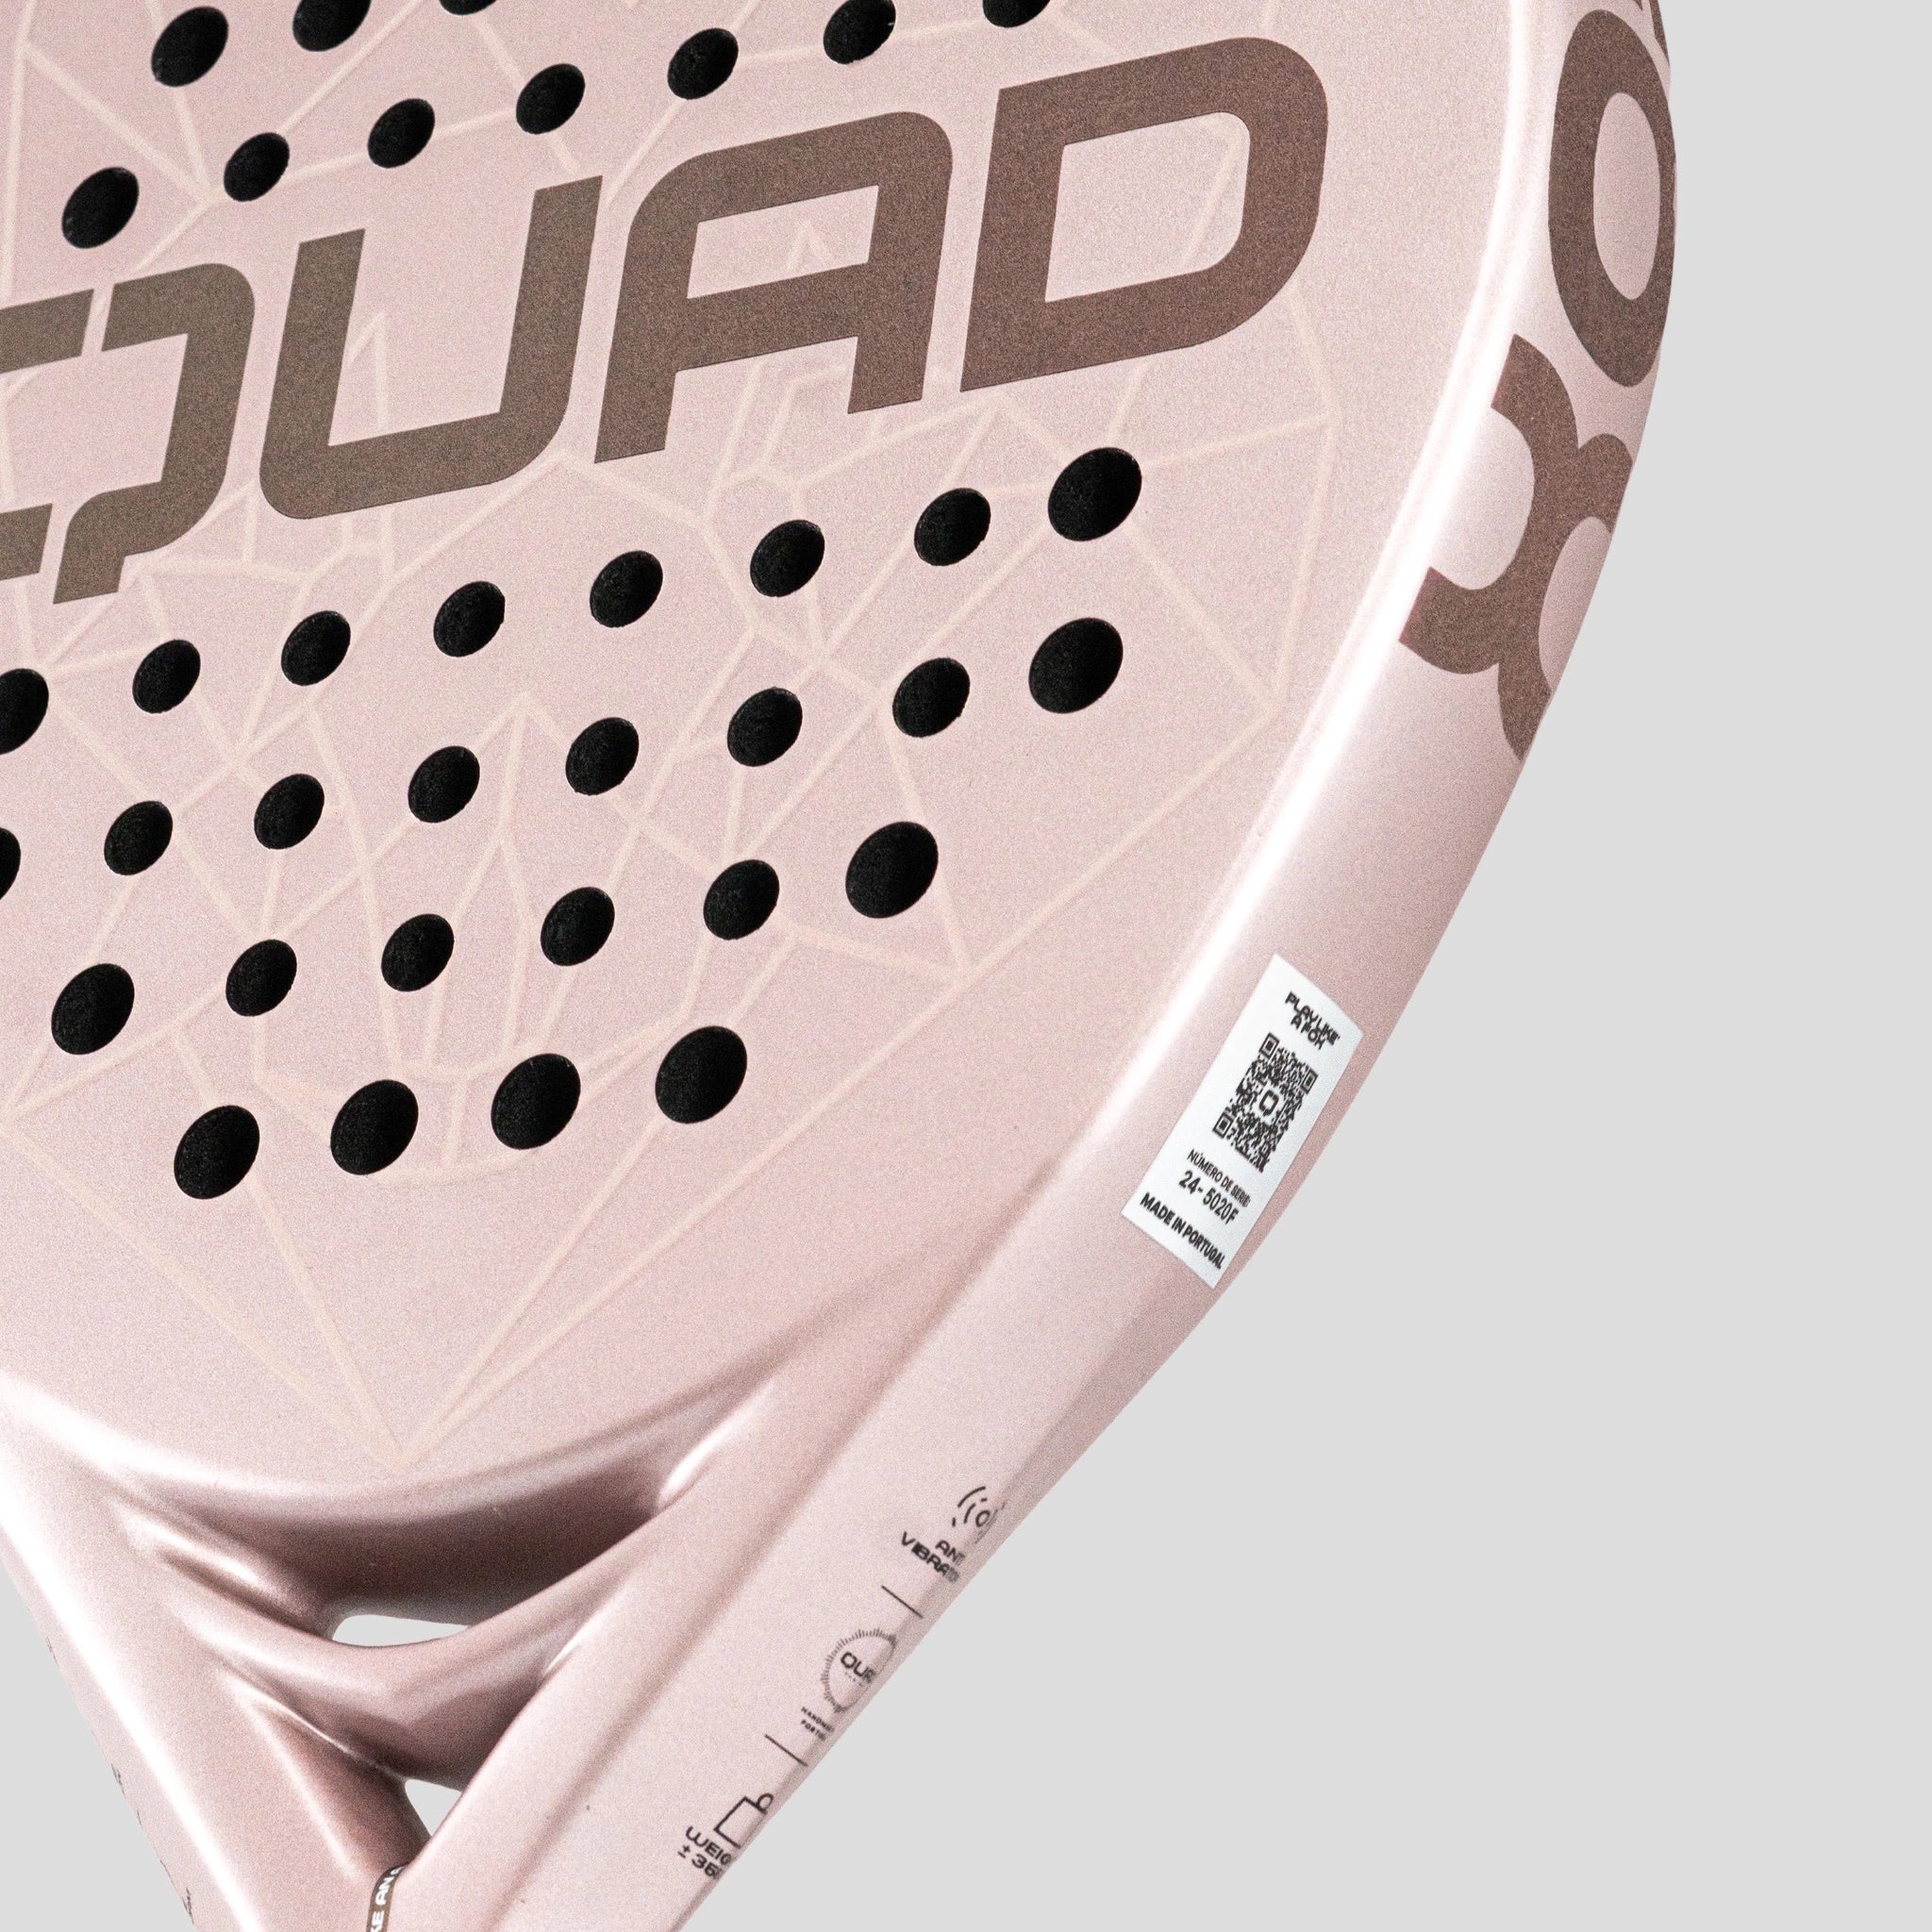 Quad Fox padel racket right side detail